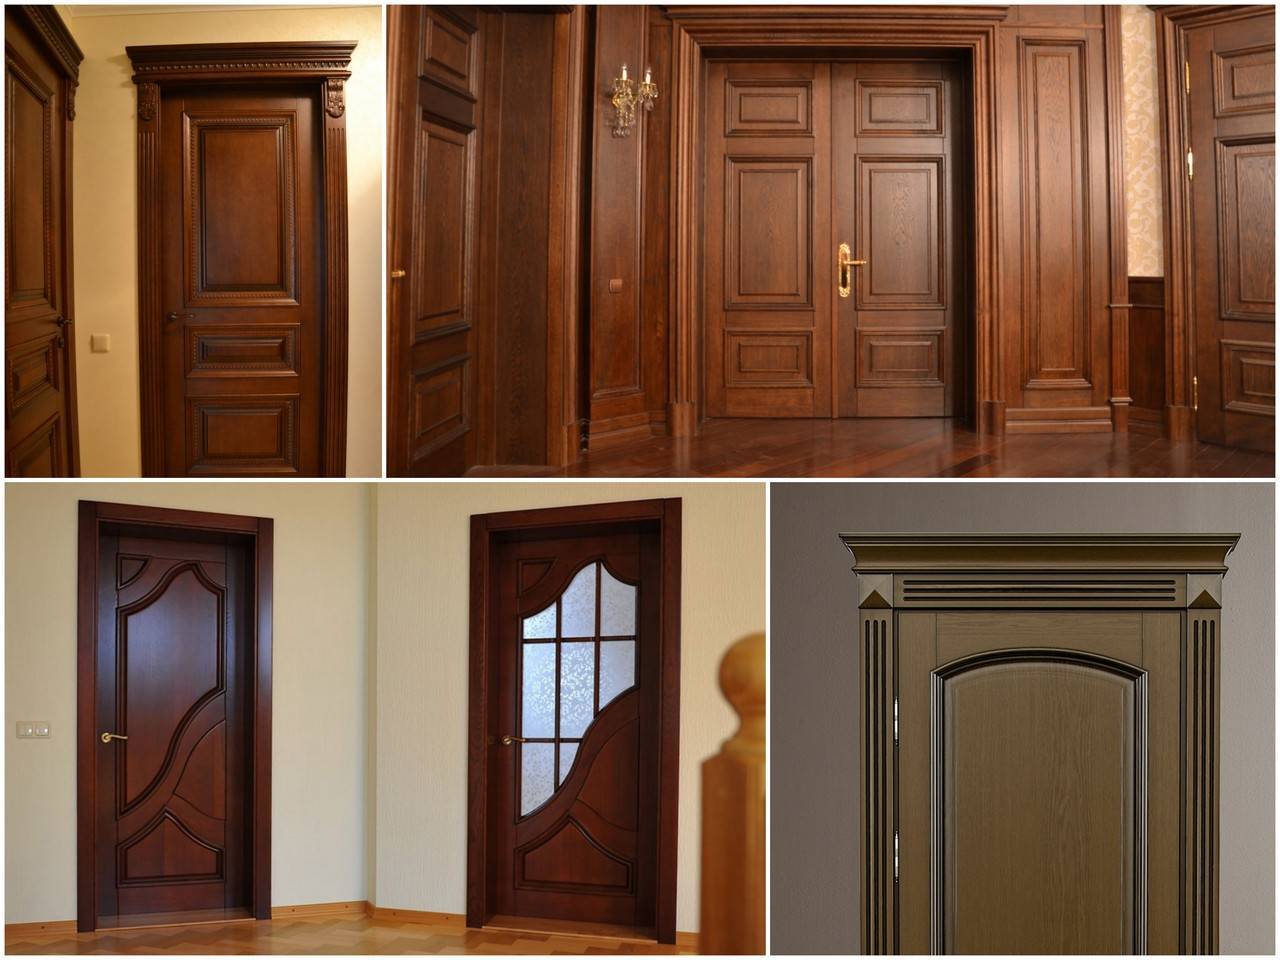 Как выбрать межкомнатные двери в квартиру: какие лучше, как правильно подобрать хороший по качеству материал, цвет, подойдут ли белые, также советы профессионалов